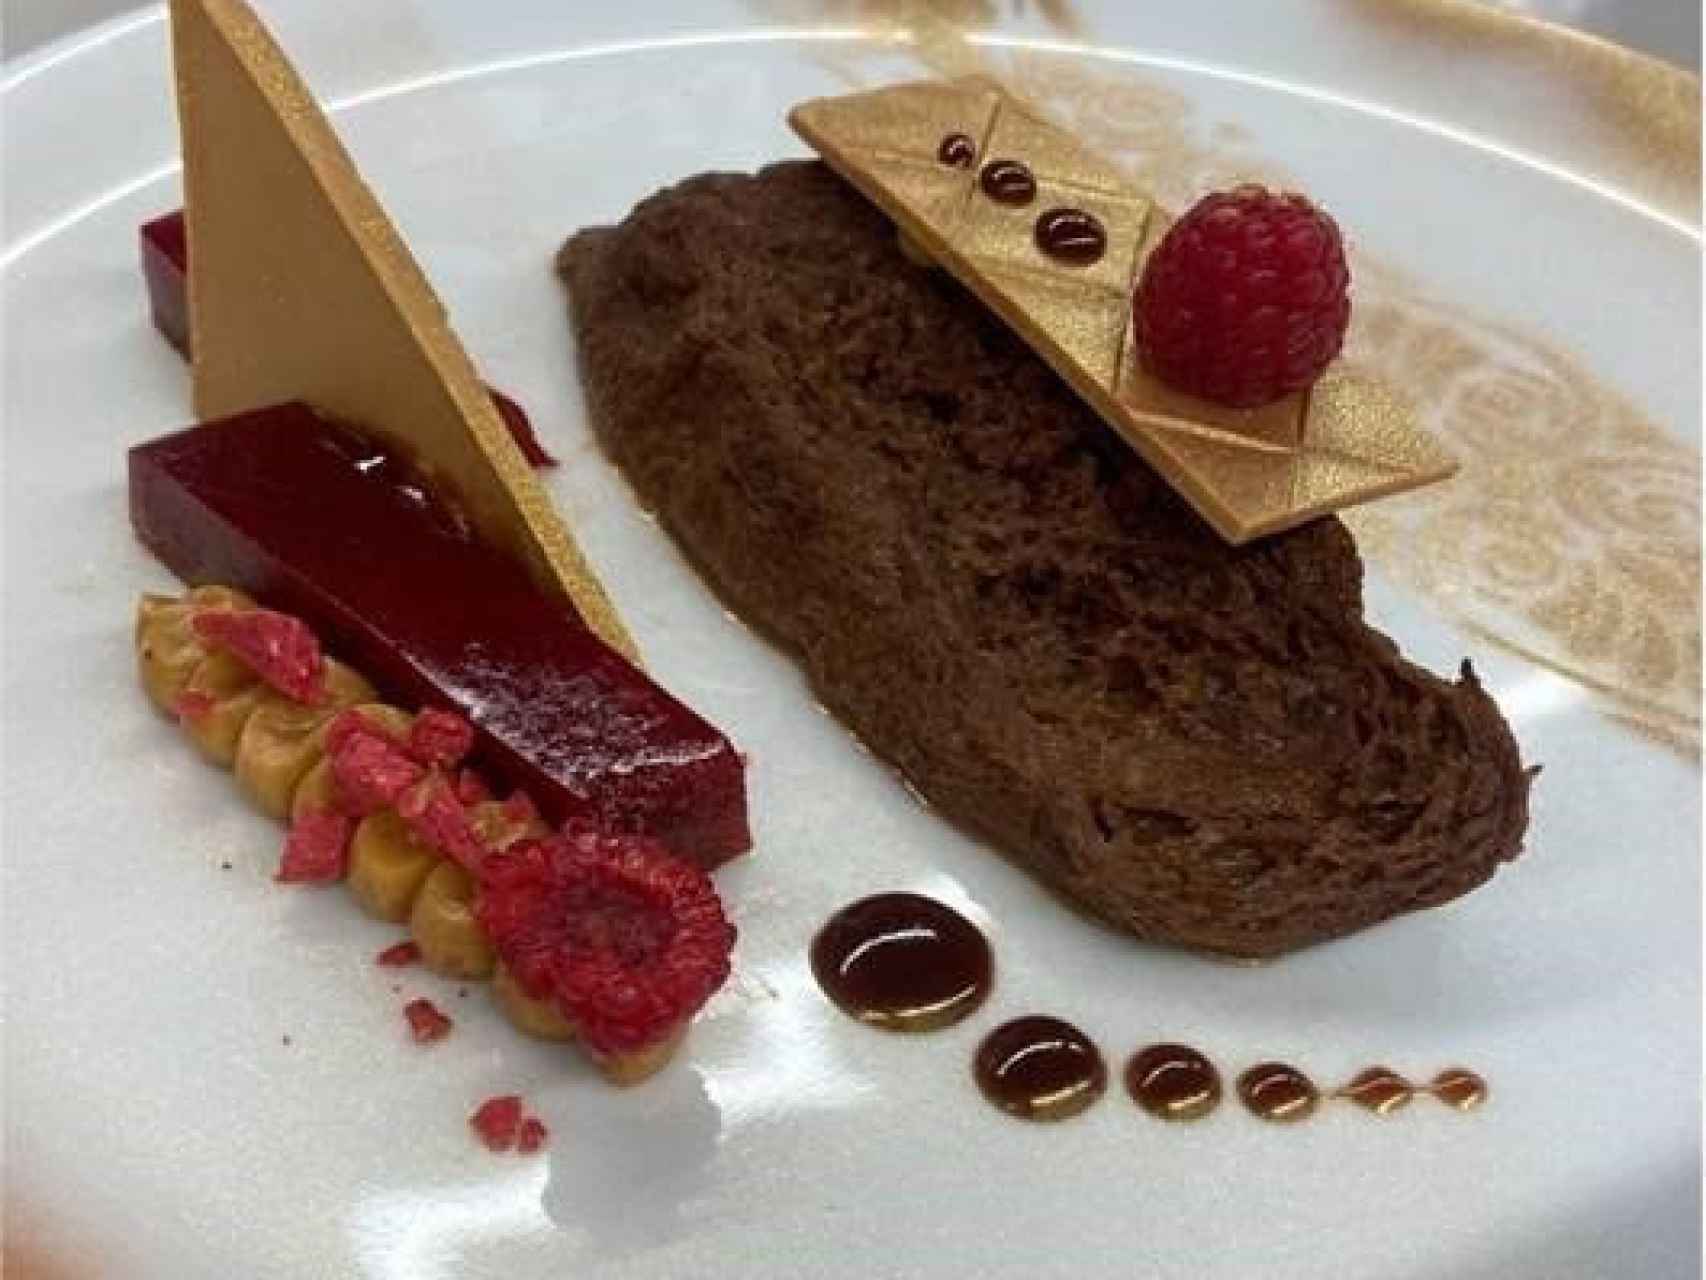 La torrija de chocolate gold con crunch de frambuesa, elaborada por Viena Capellanes.